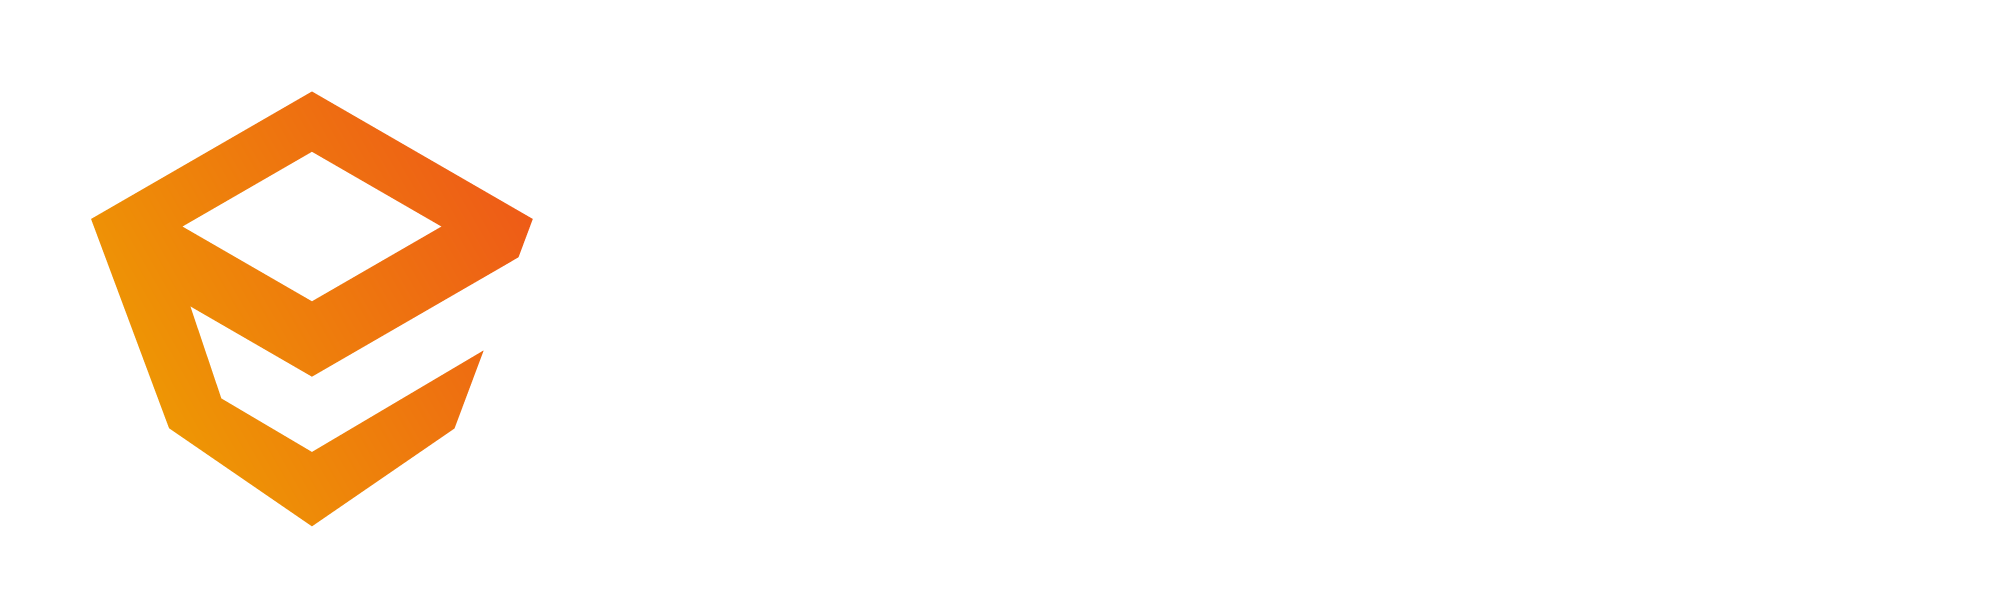 Mini tutorial alla scoperta dell'aggiornamento di Enscape 3.5.3